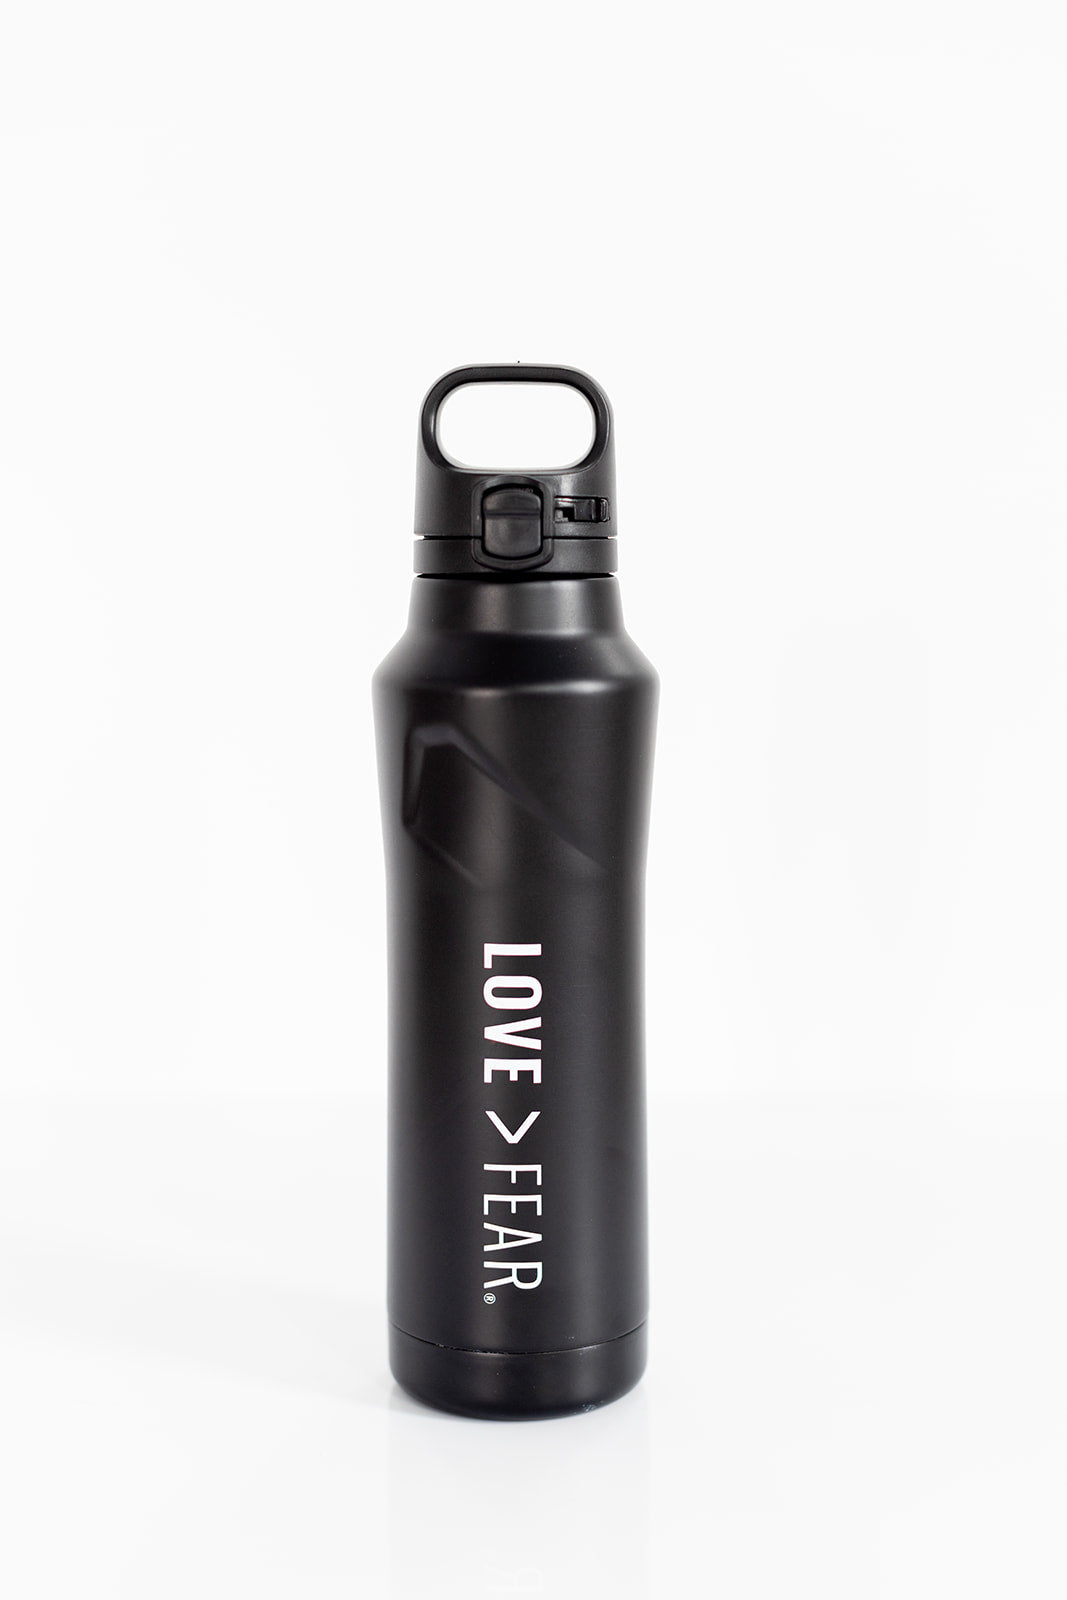 Love > Fear® Premium Water Bottle